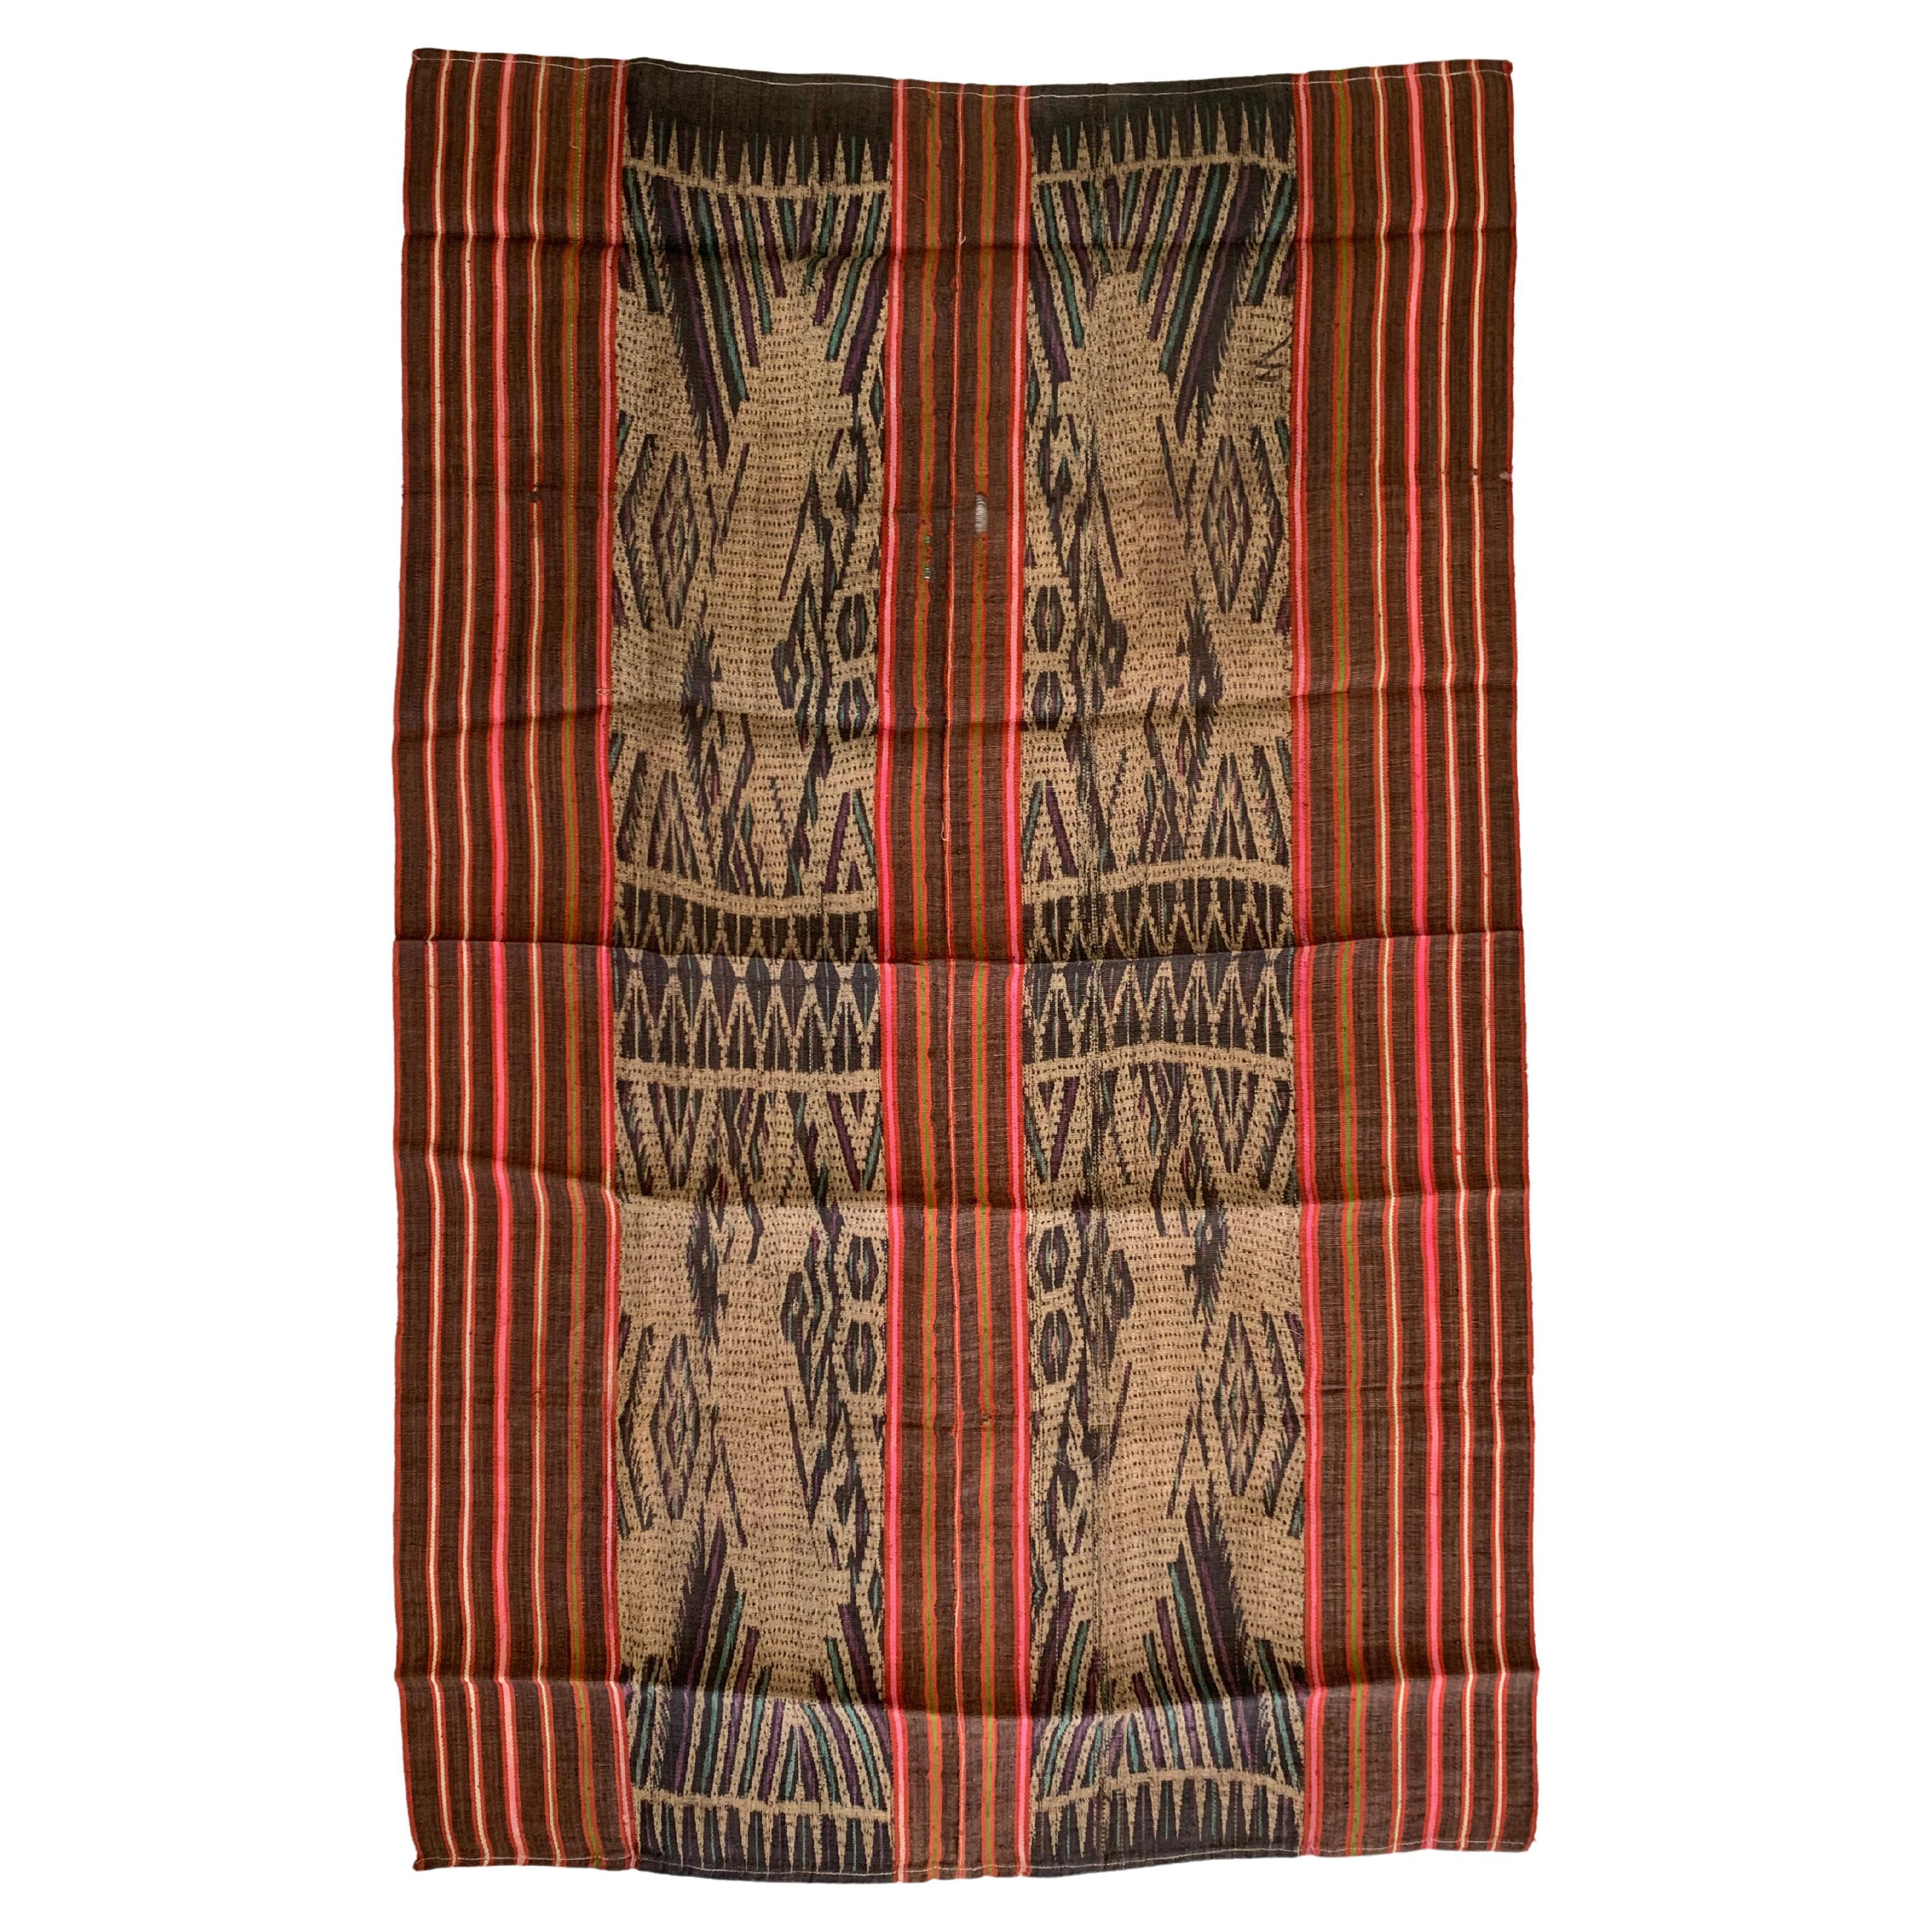 Ikat-Textil des Dayak-Stammes Kalimantan, Indonesien